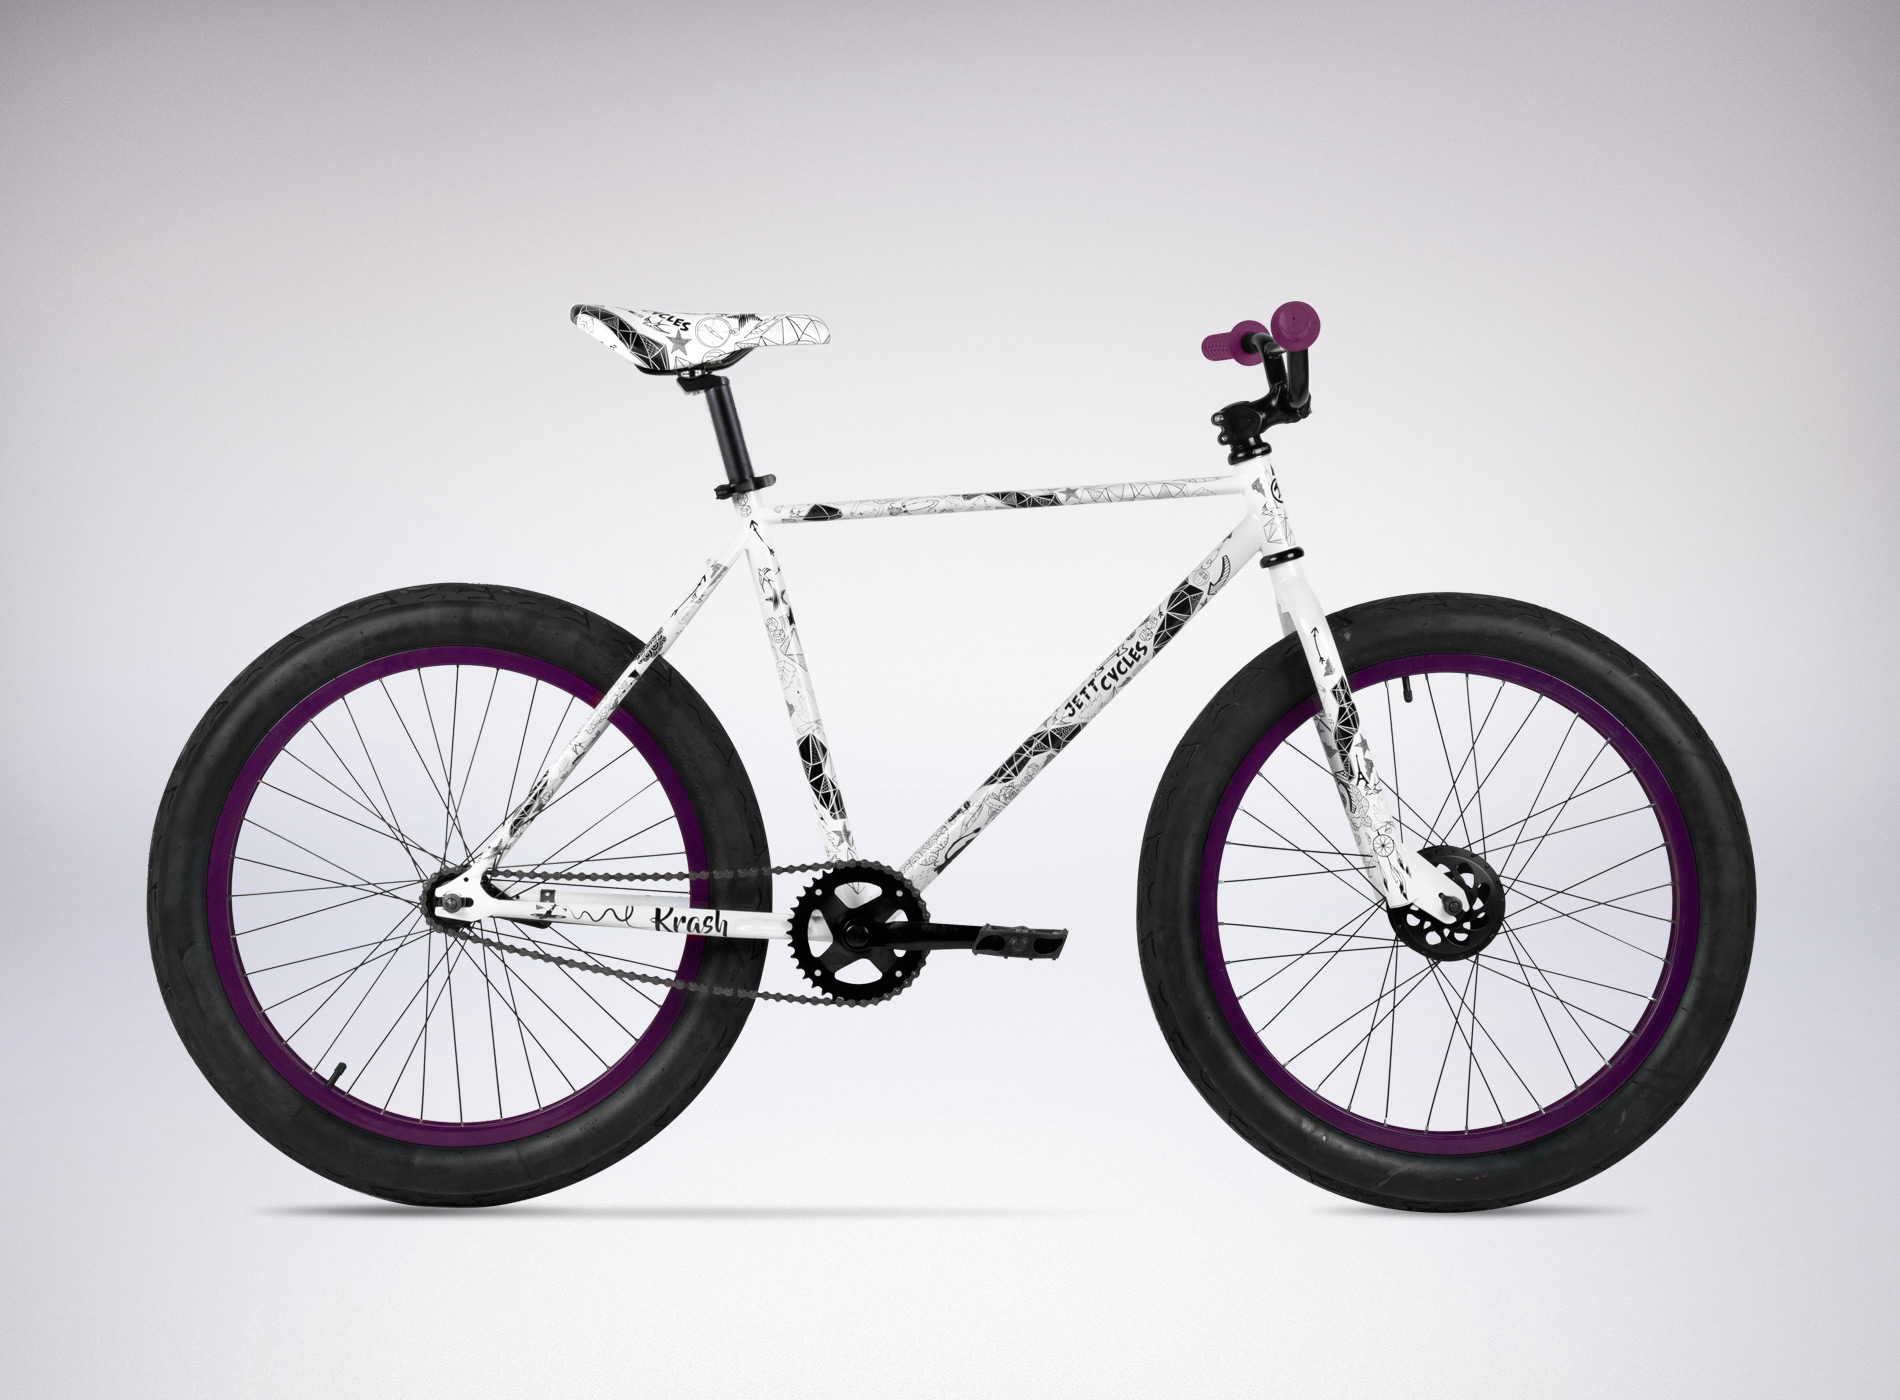 Xe đạp thể thao Jett Krash trắng tím white purple